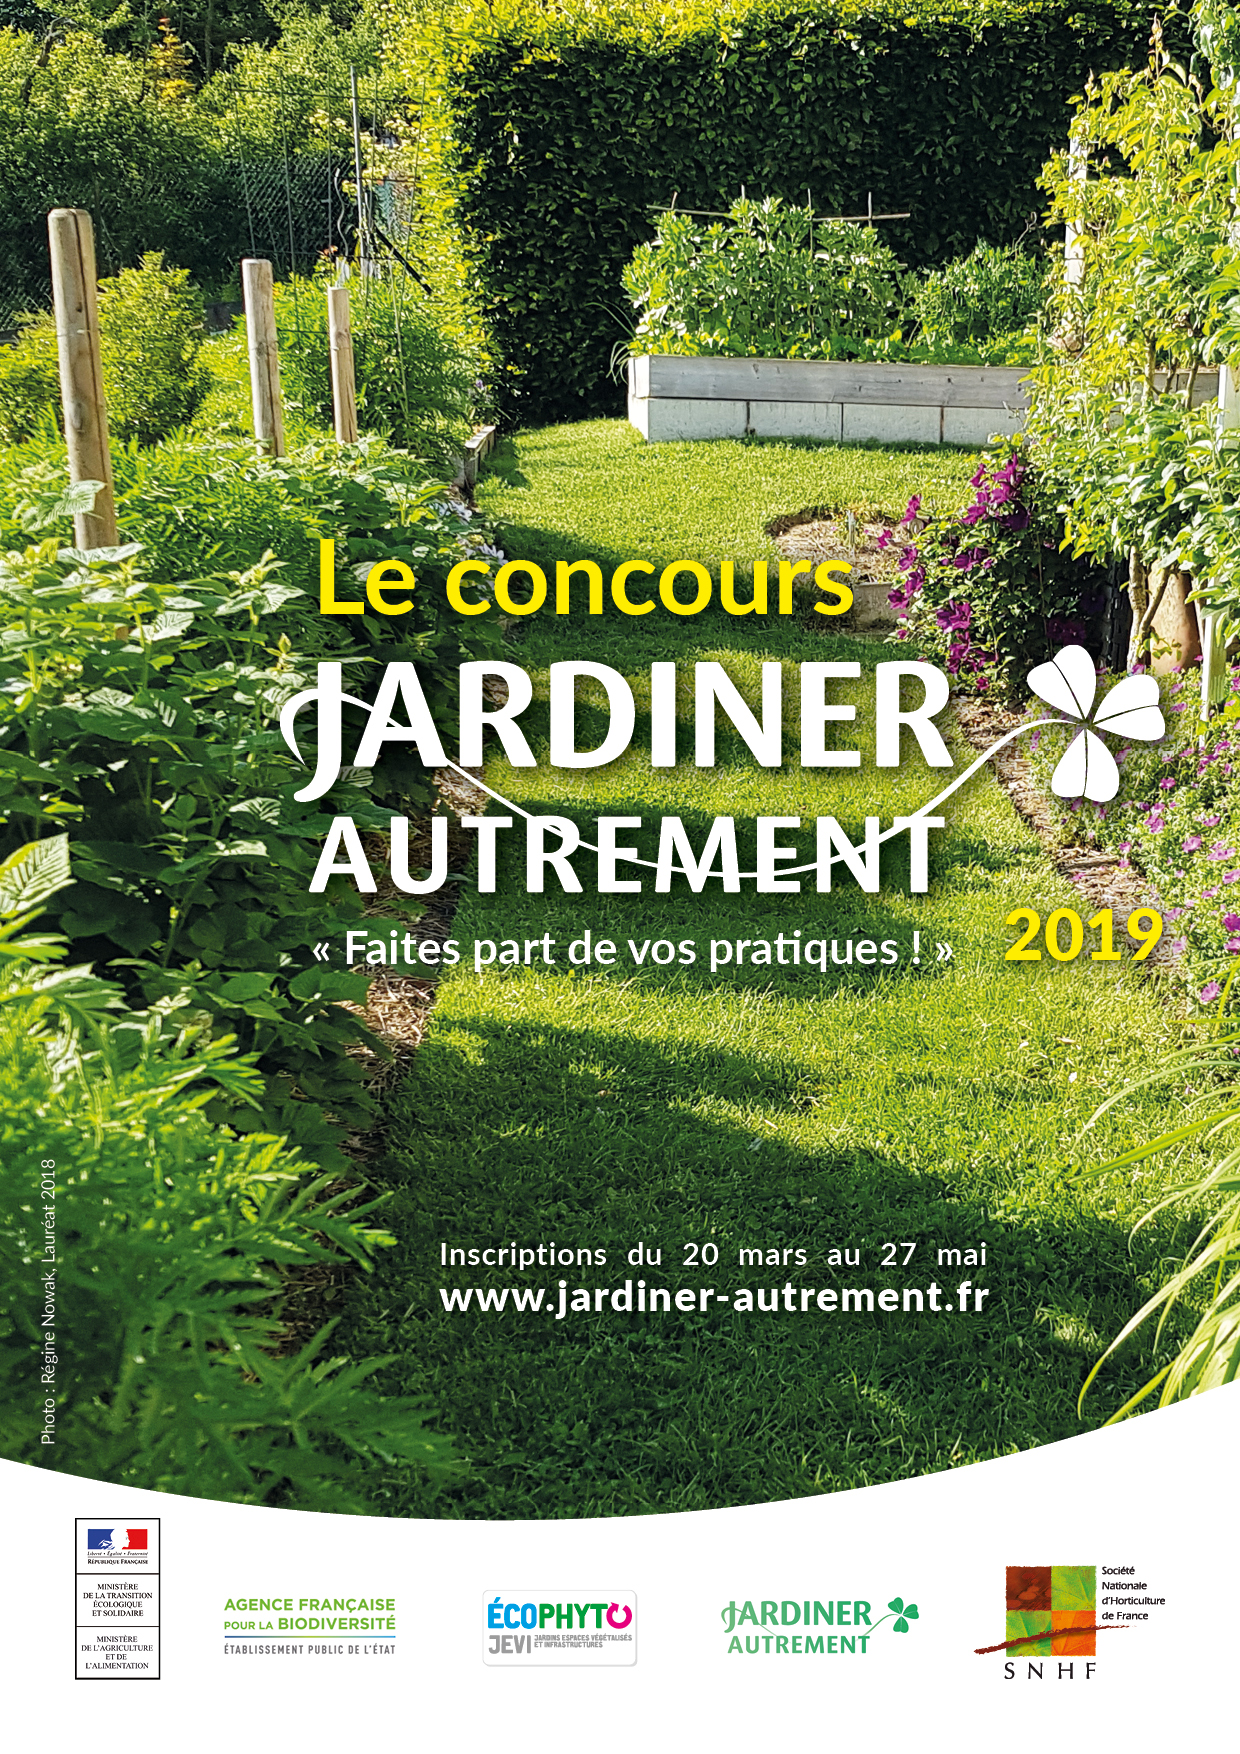 Concours National Des Jardins Potagers Archives Societe Nationale D Horticulture De France